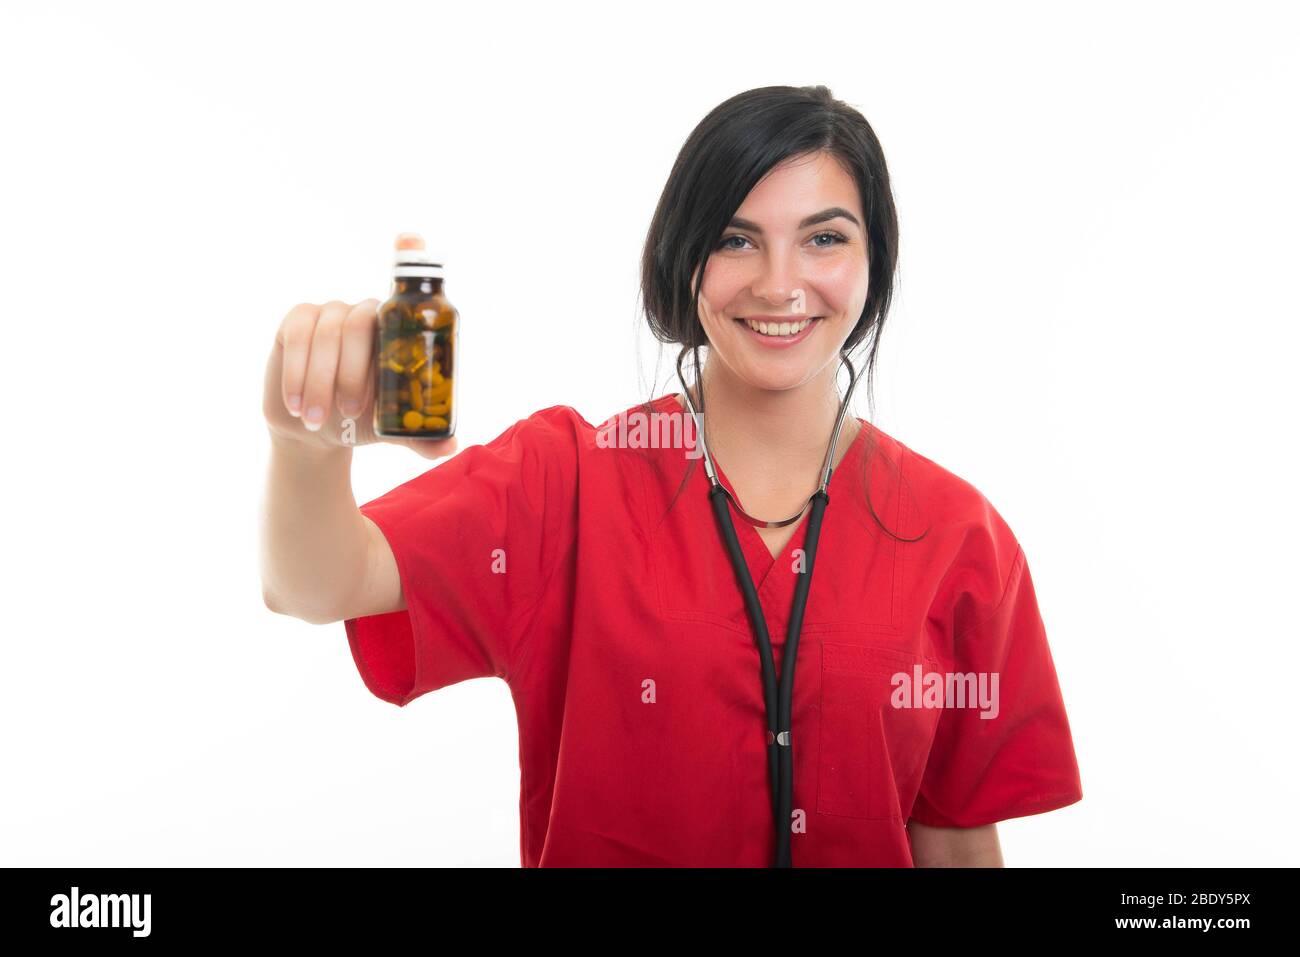 Retrato de una joven enfermera atractiva mostrando botella de píldoras aisladas sobre fondo blanco con área de publicidad del espacio de copia Foto de stock